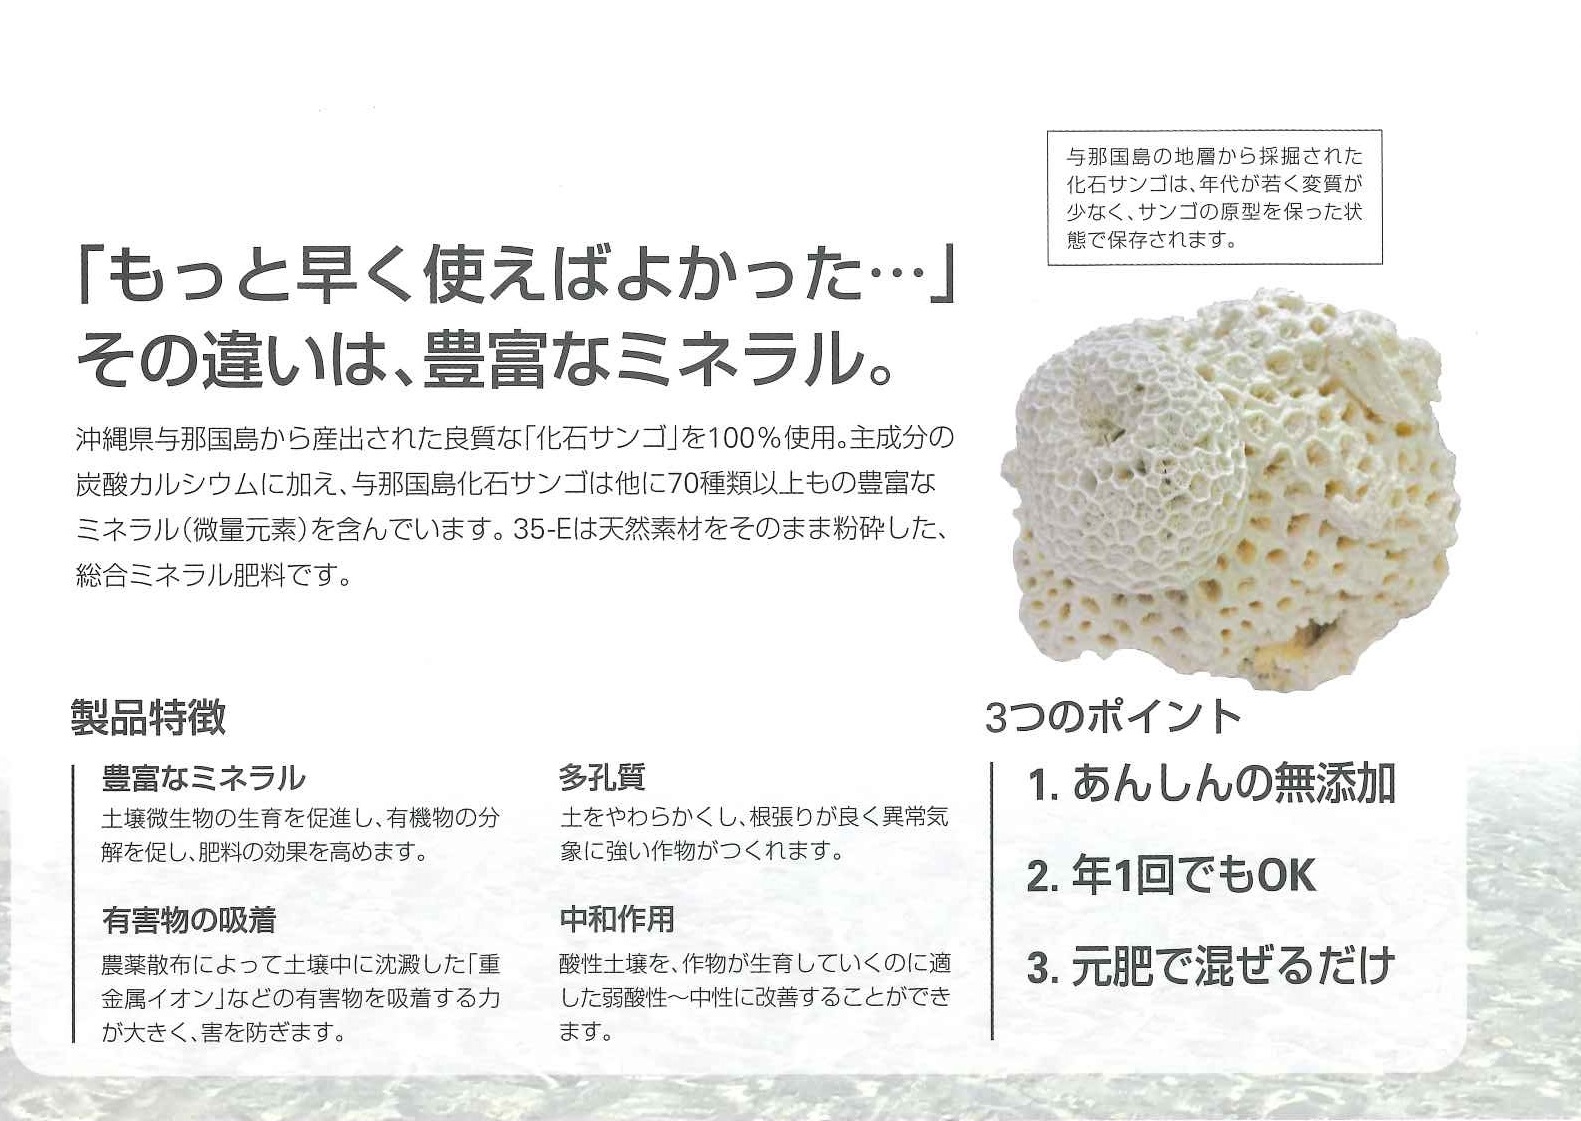 タカミヤ 天然化石サンゴ肥料シリーズ「サンゴ粉末肥料 35-E」 ※代引き不可